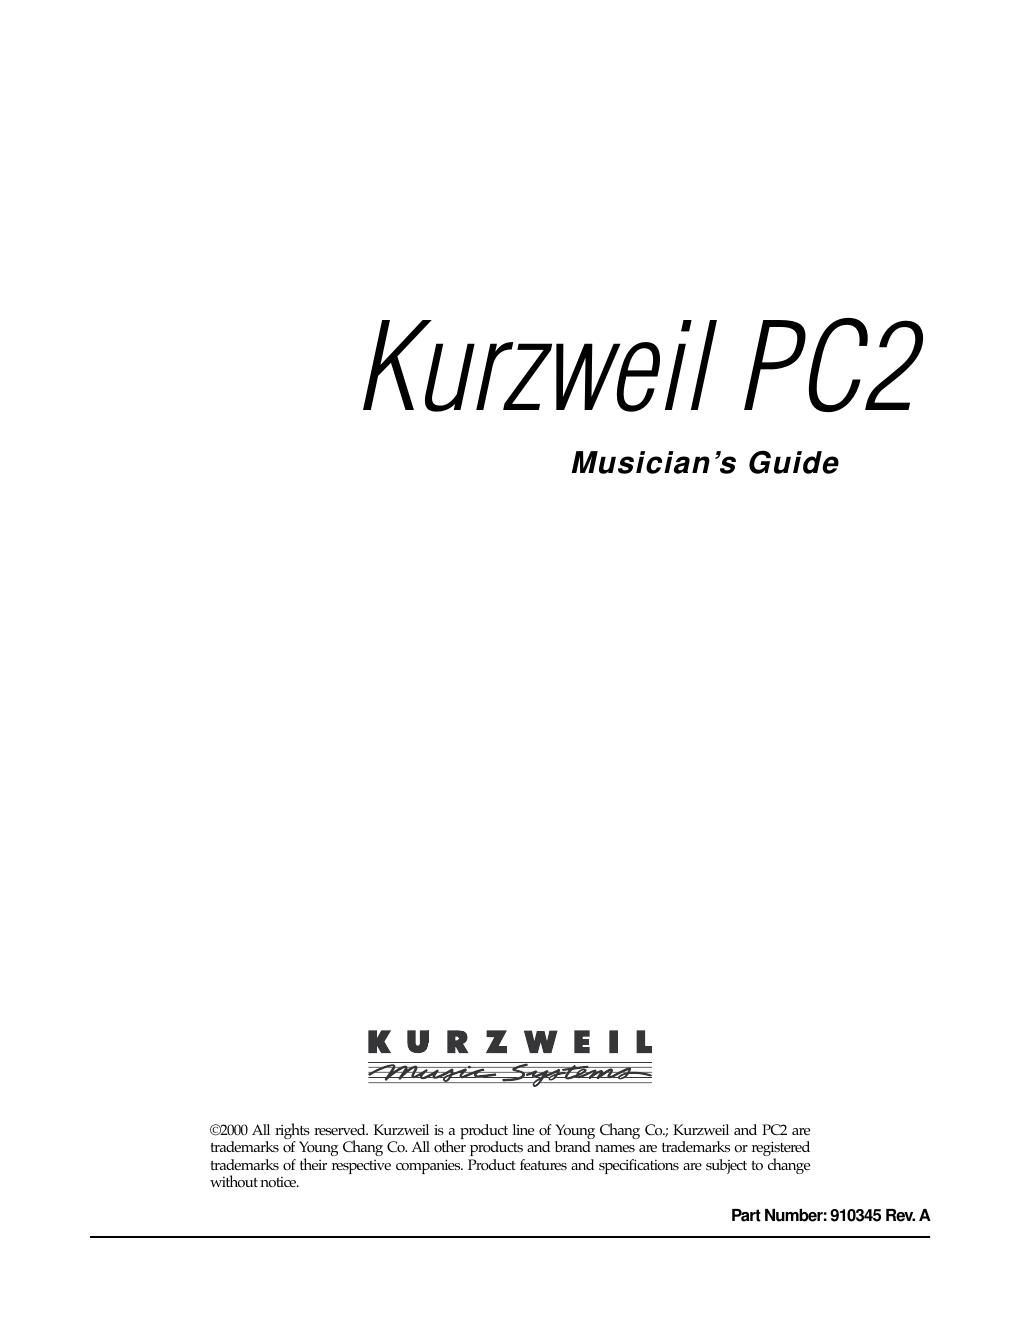 Kurzweil PC2 musicians guide